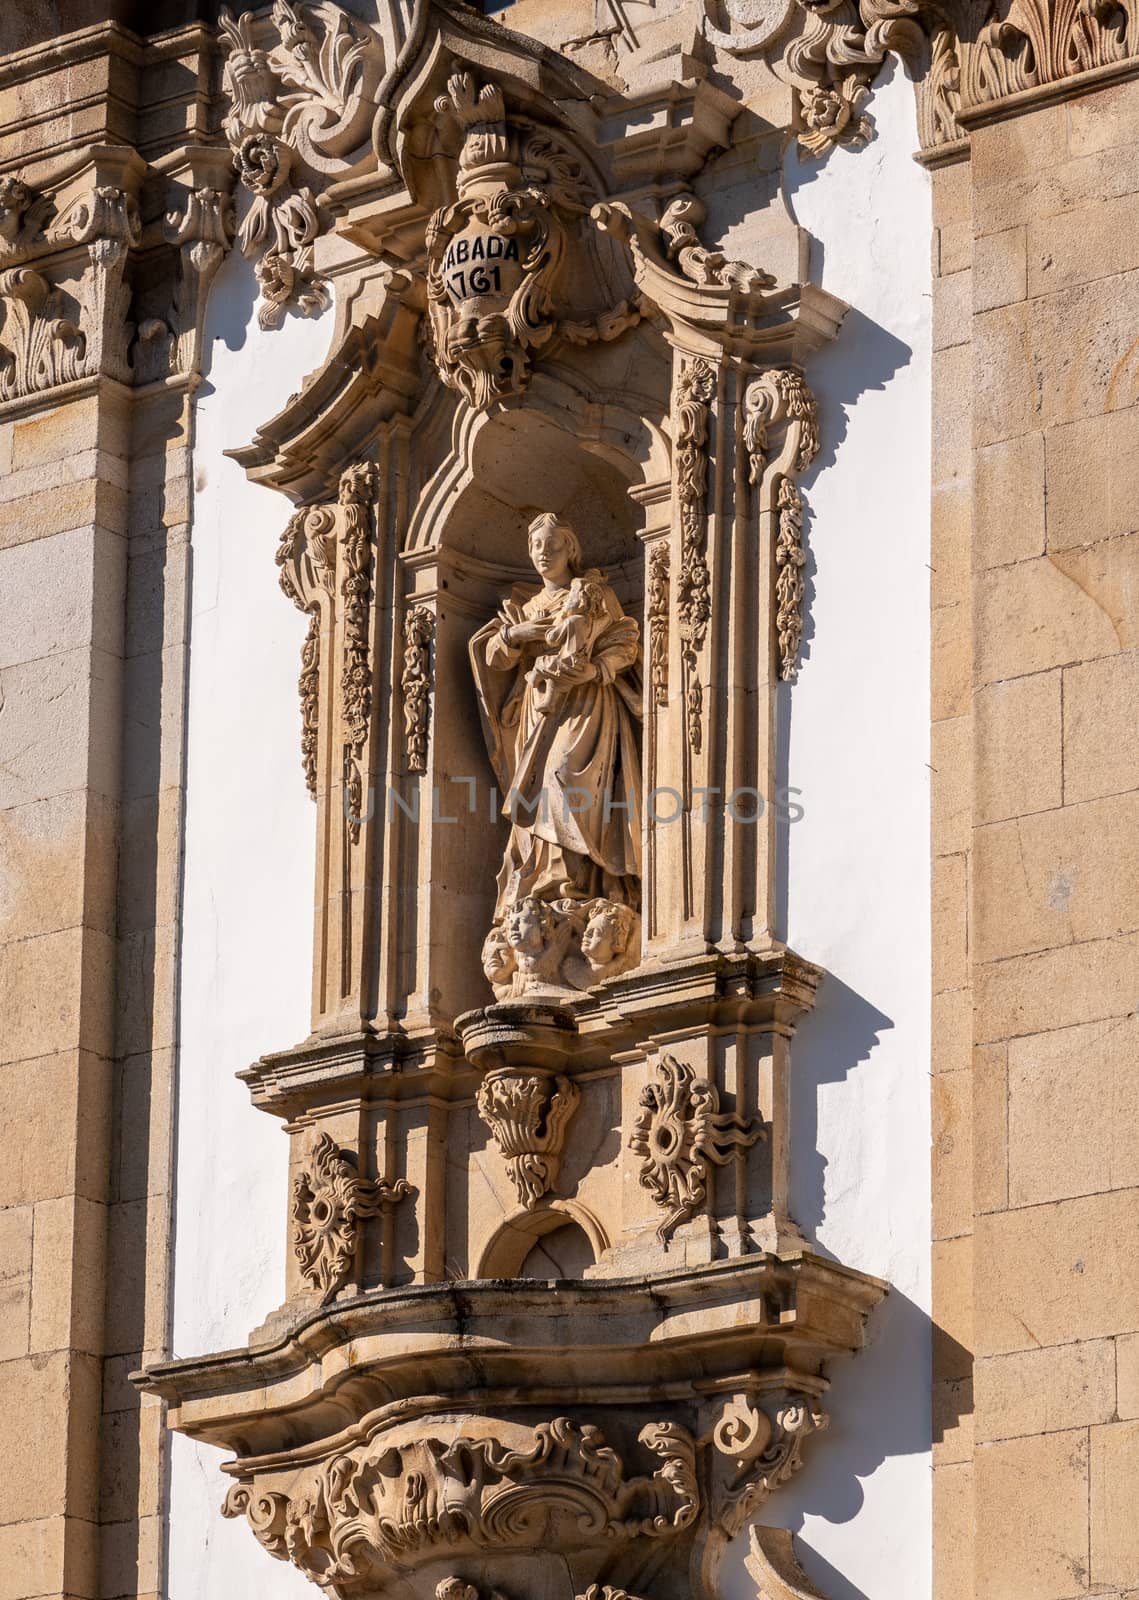 Santuario de Nossa Senhora dos Remedios at the top of the baroque staircase above Lamego in Portugal